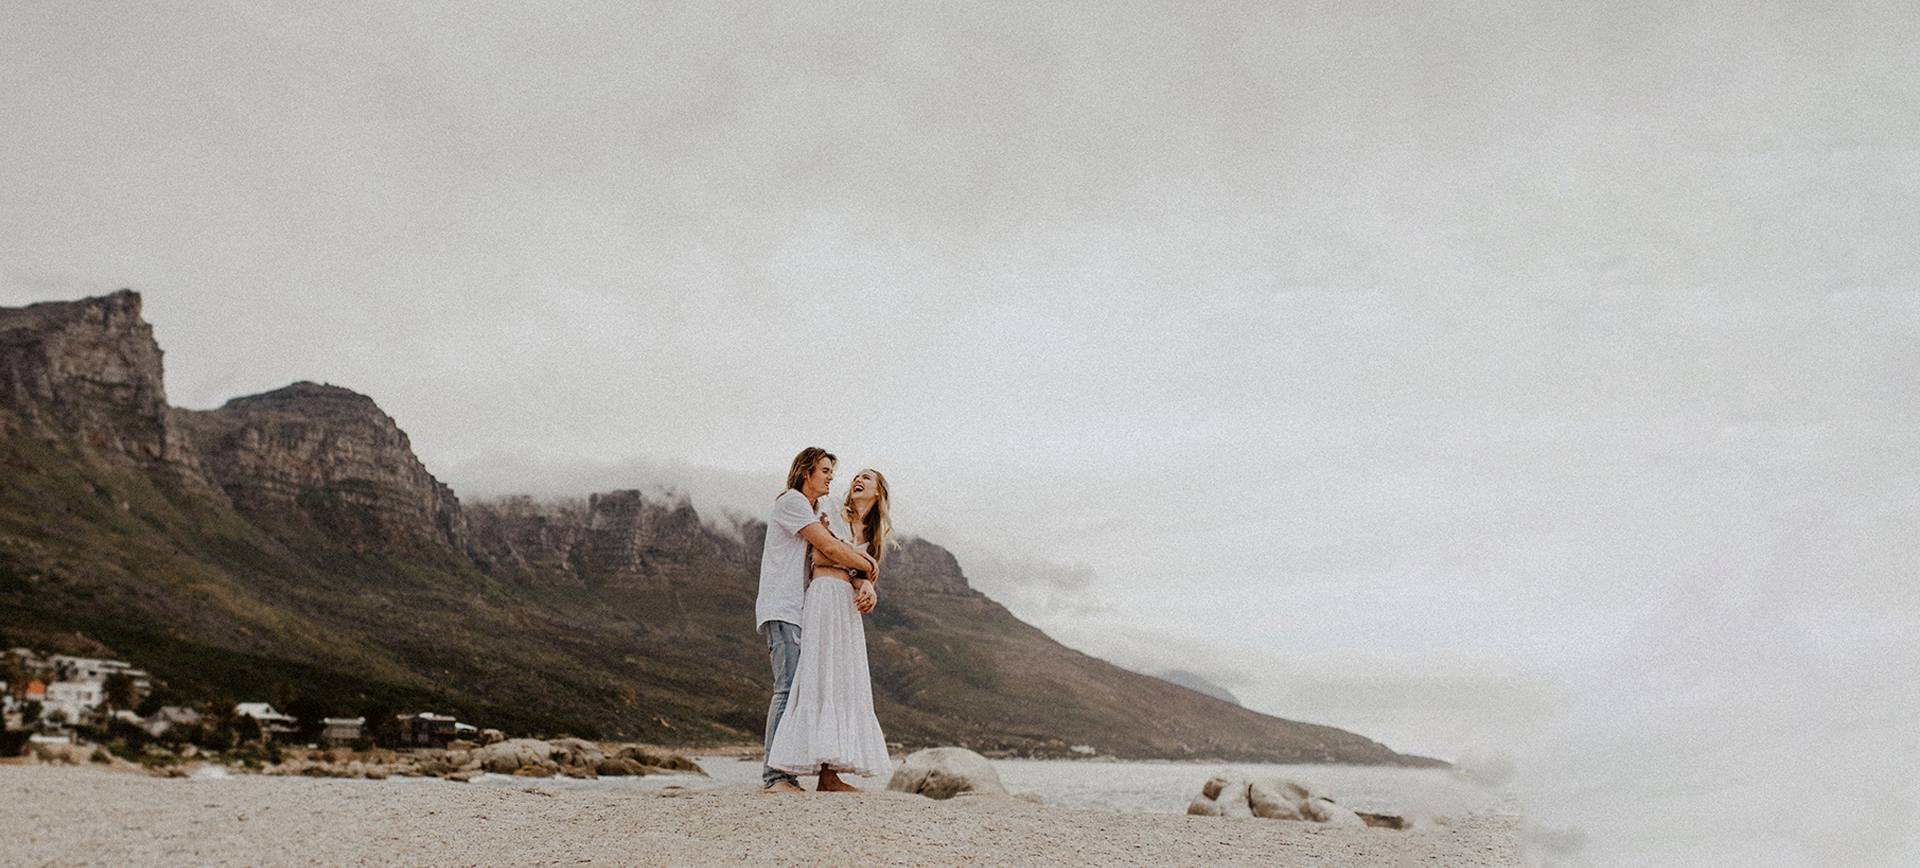 Wedding destination in Cape Town